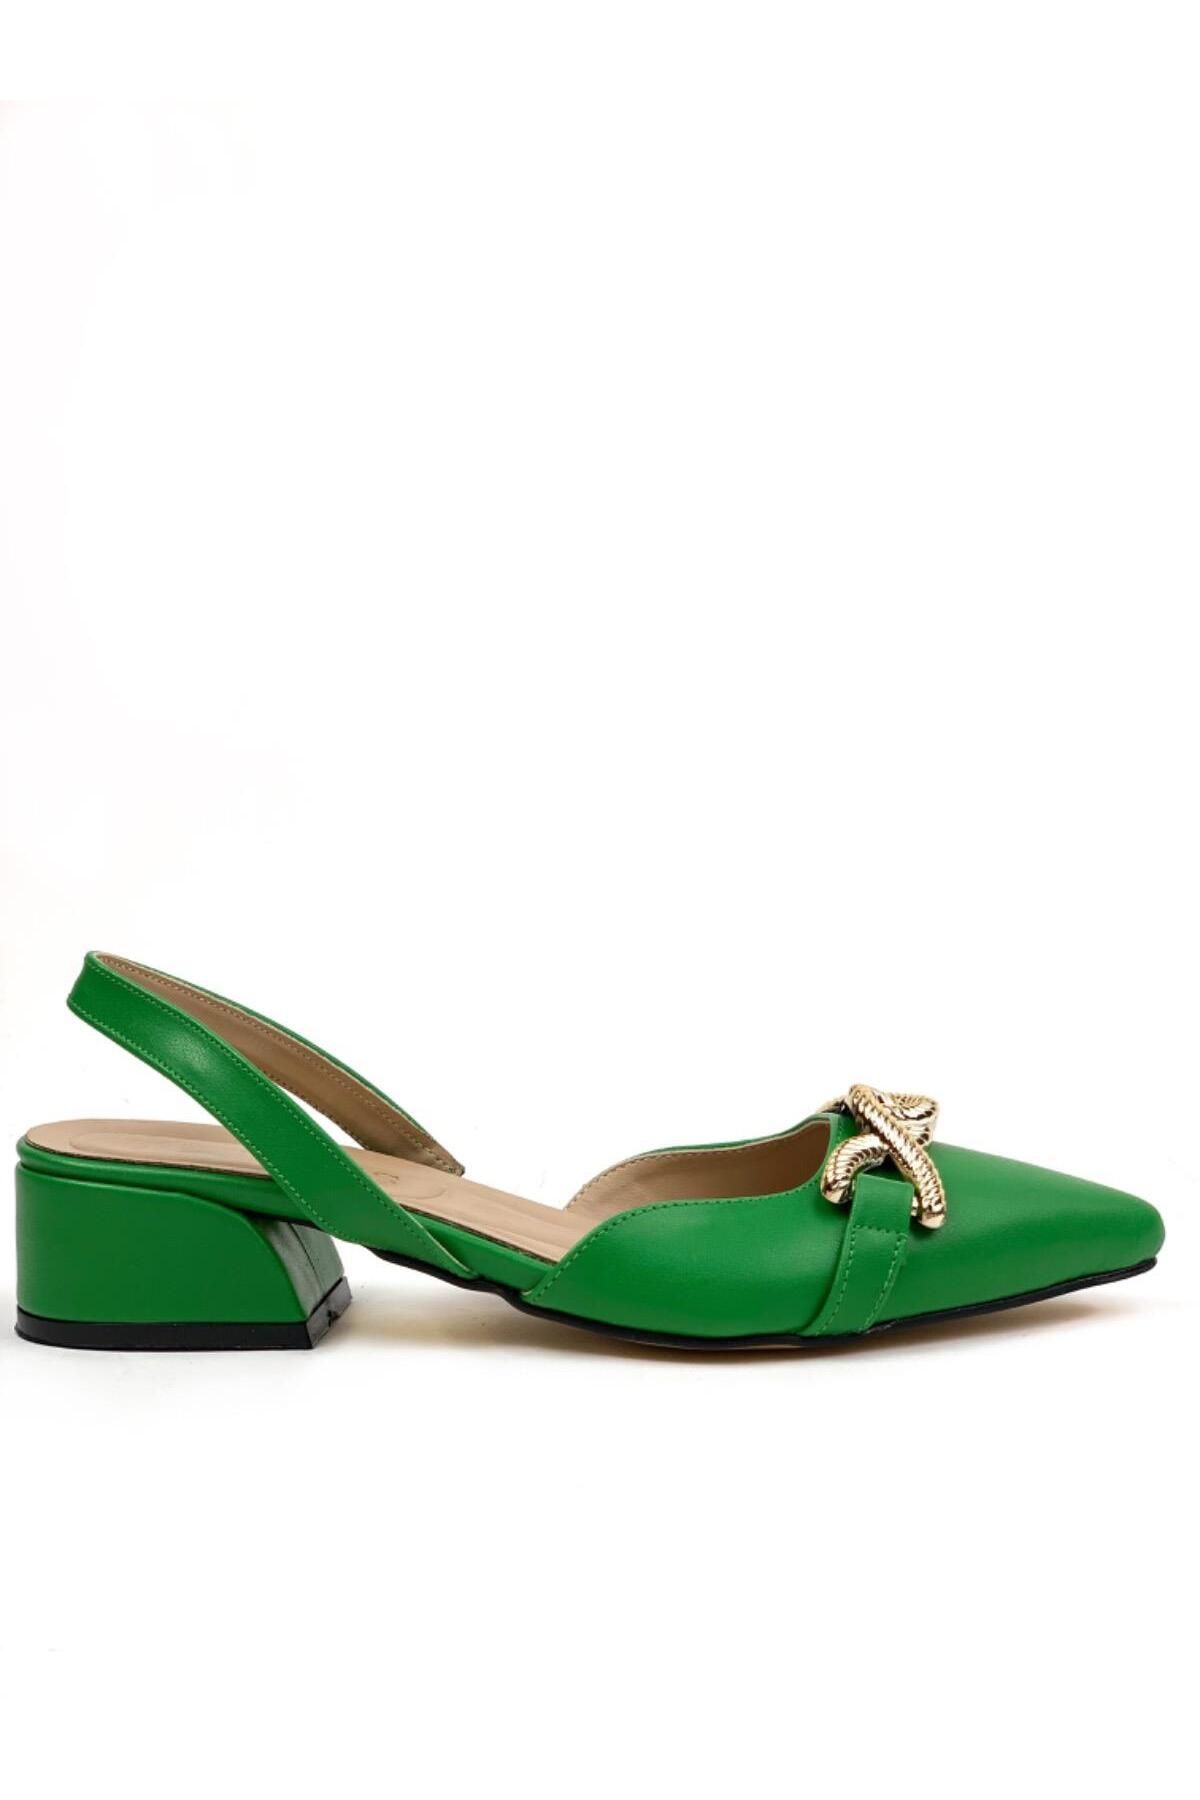 bescobel Kadın Berel Yeşil Tokalı Sivri Burun Sandalet Terlik Alçak Topuk